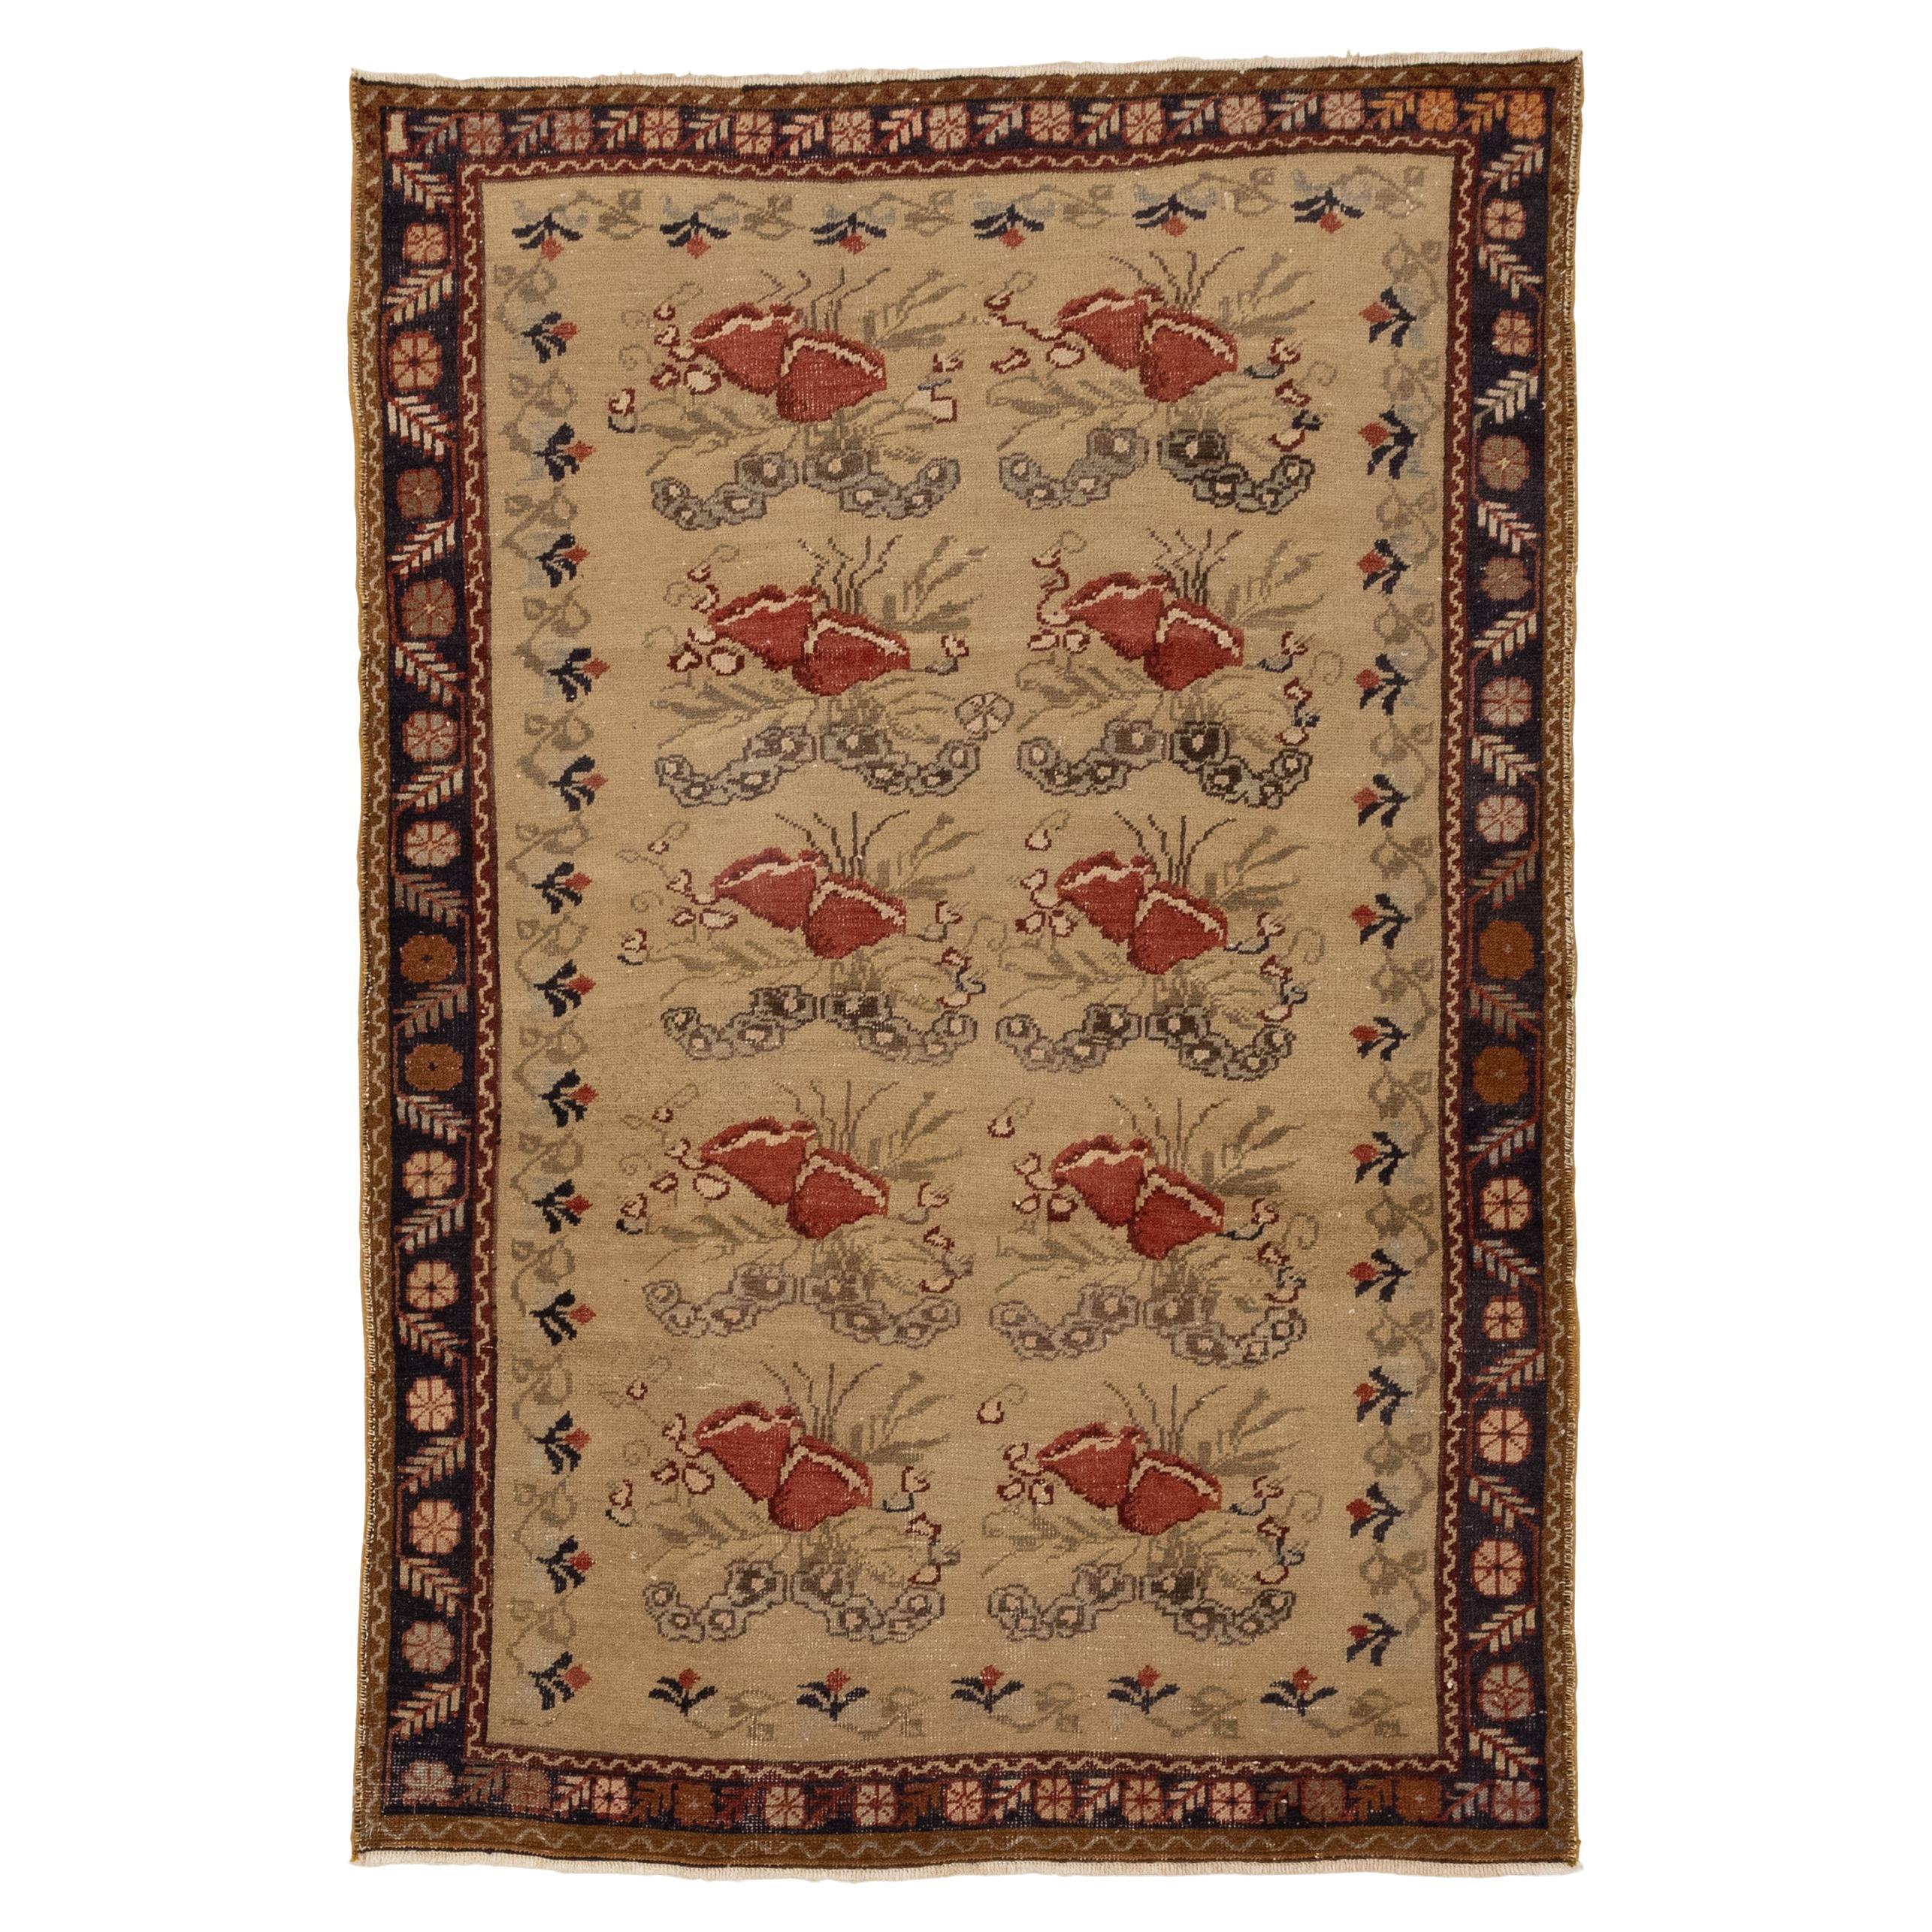 Antiker türkischer Ushak-Ottomanischer Teppich aus dem 19. Jahrhundert